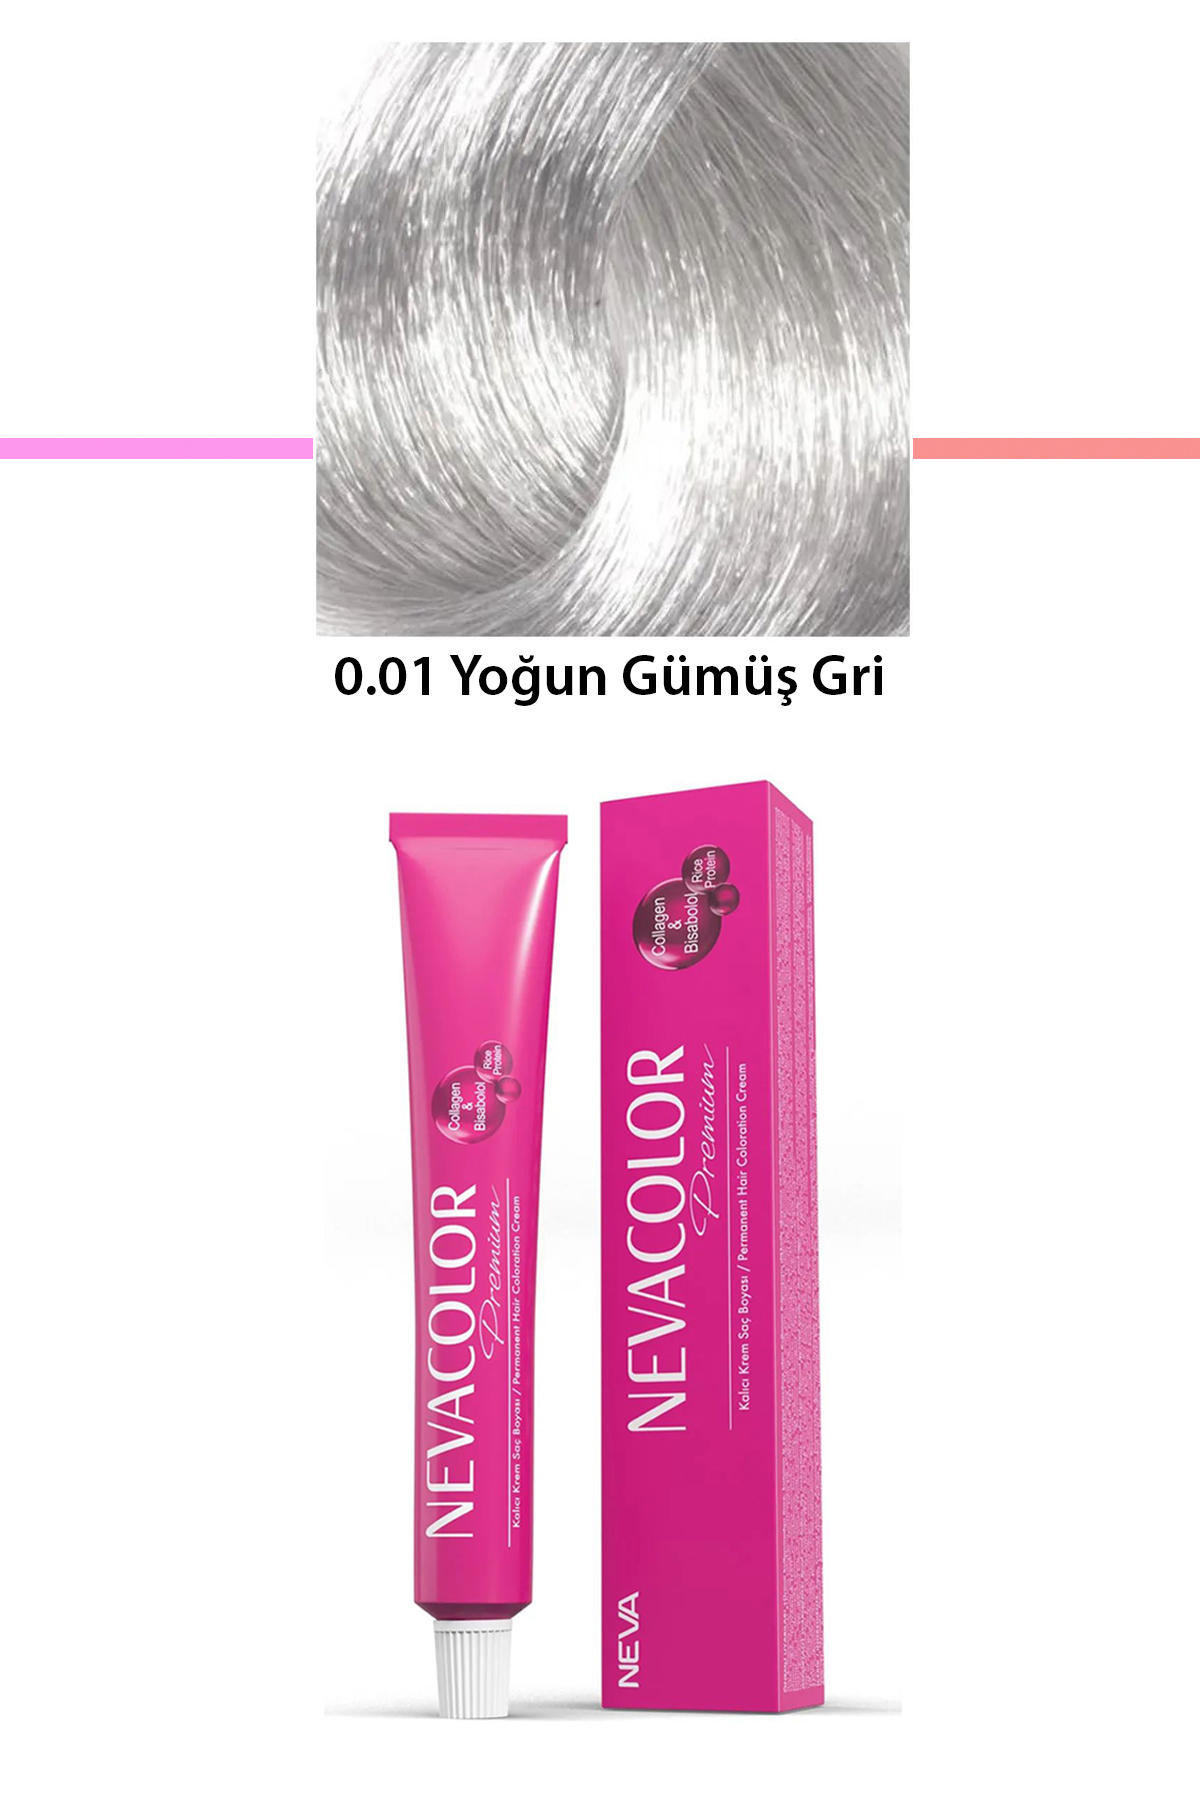 Nevacolor 0.01 Yoğun Gümüş gri Organik Krem Saç Boyası 50 gr